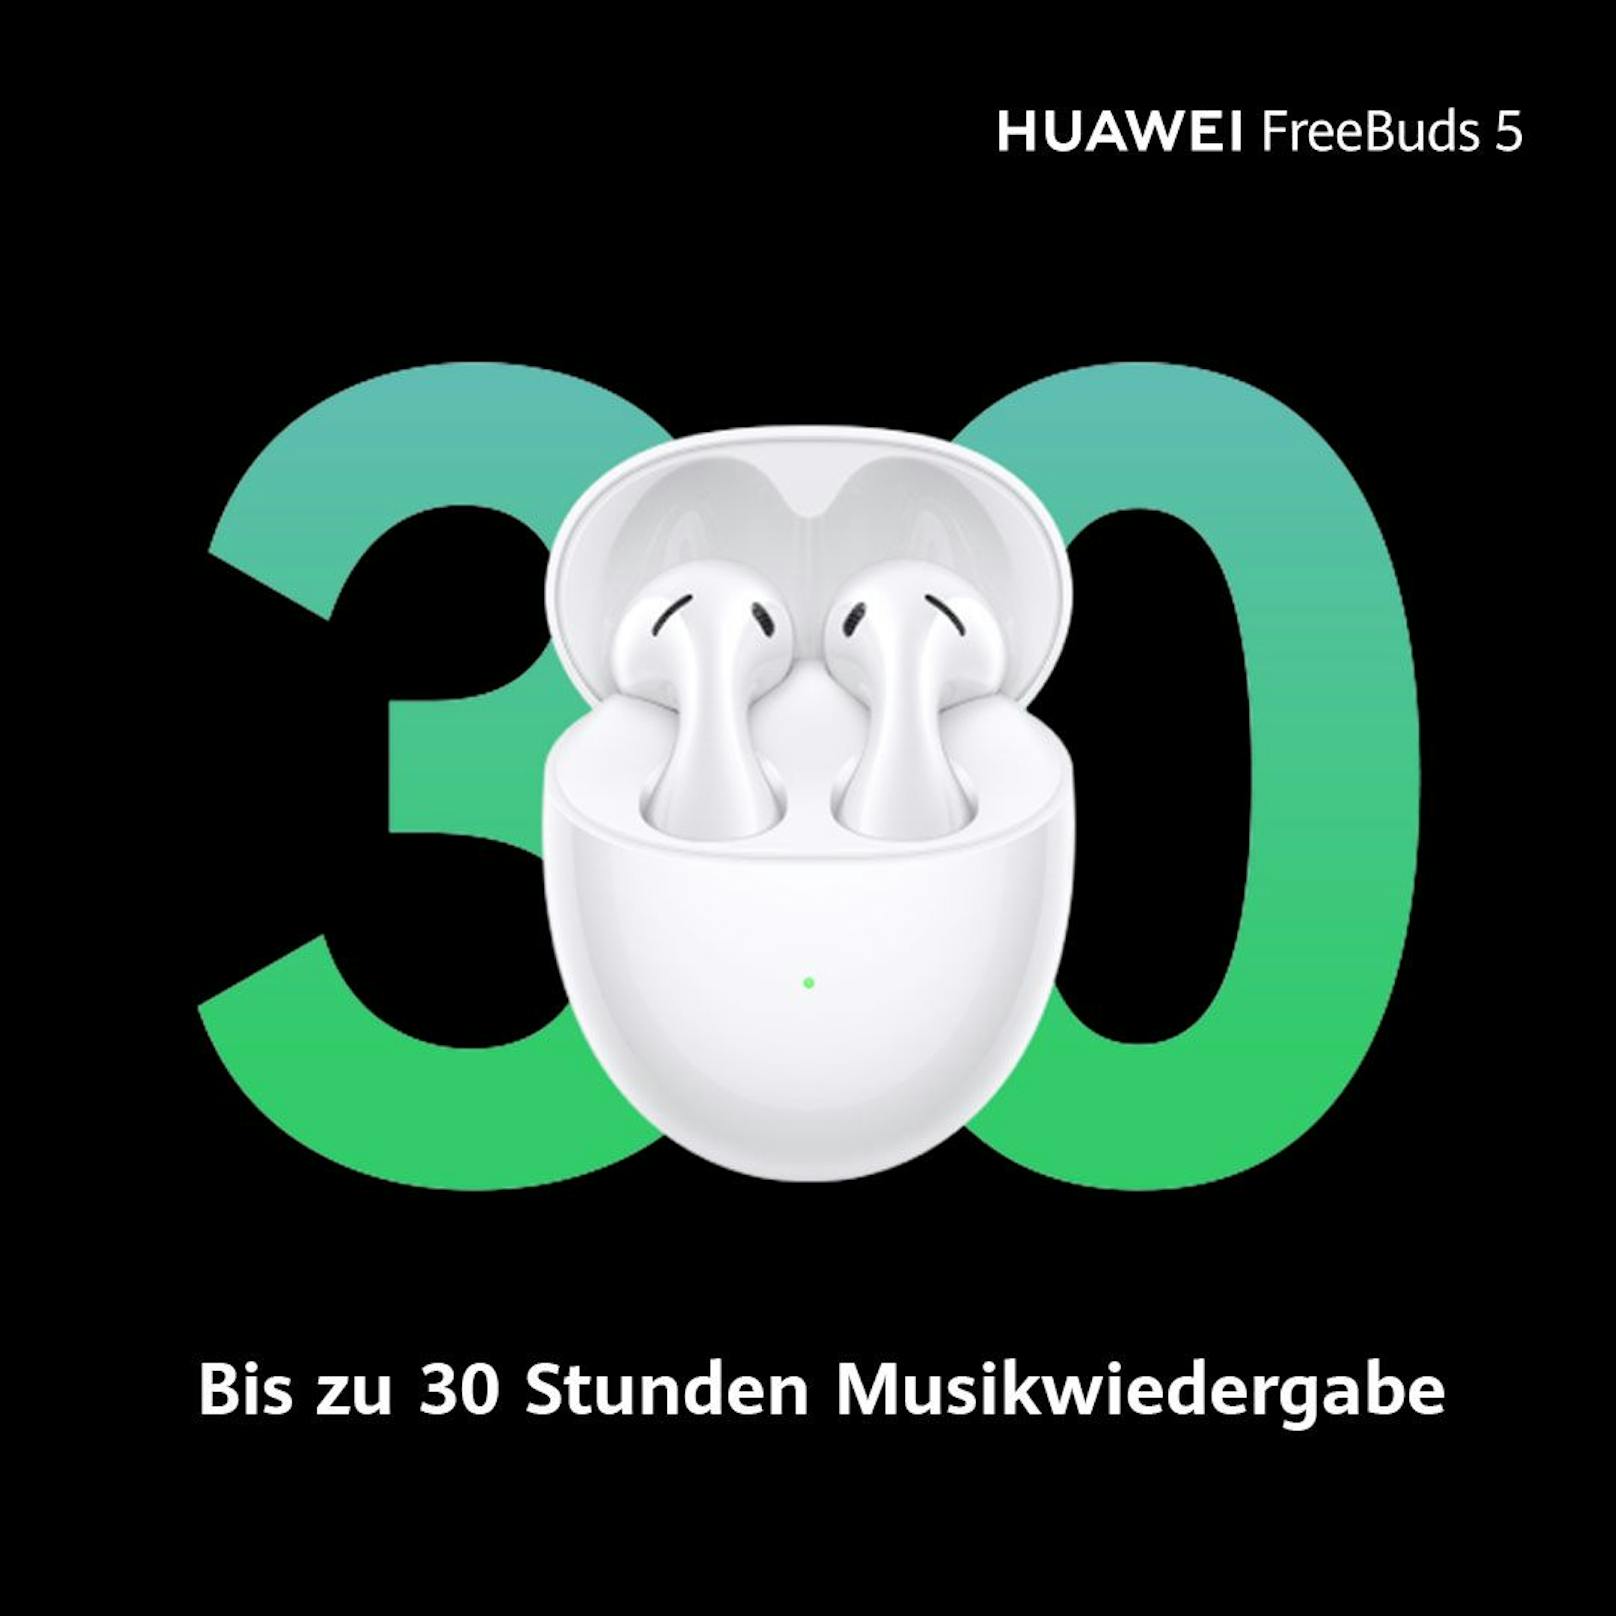 Mit einer vollen Ladung können die Huawei FreeBuds 5 bis zu 30 Stunden genutzt werden.